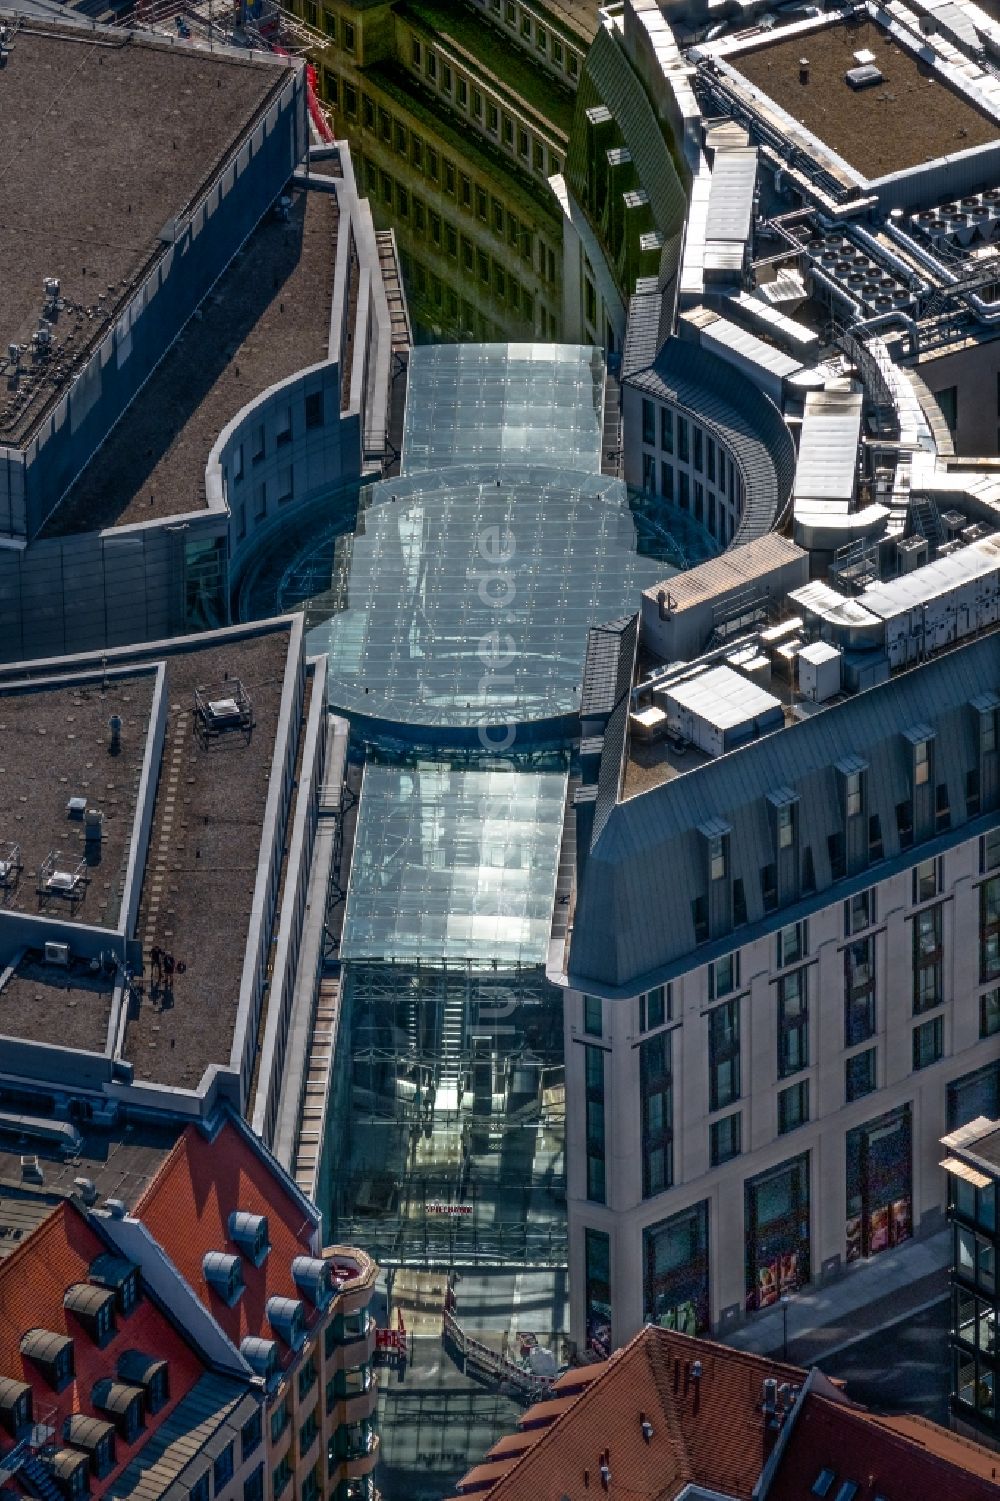 Leipzig aus der Vogelperspektive: Glasdach des Einkaufzentrum Petersbogen in Leipzig im Bundesland Sachsen, Deutschland